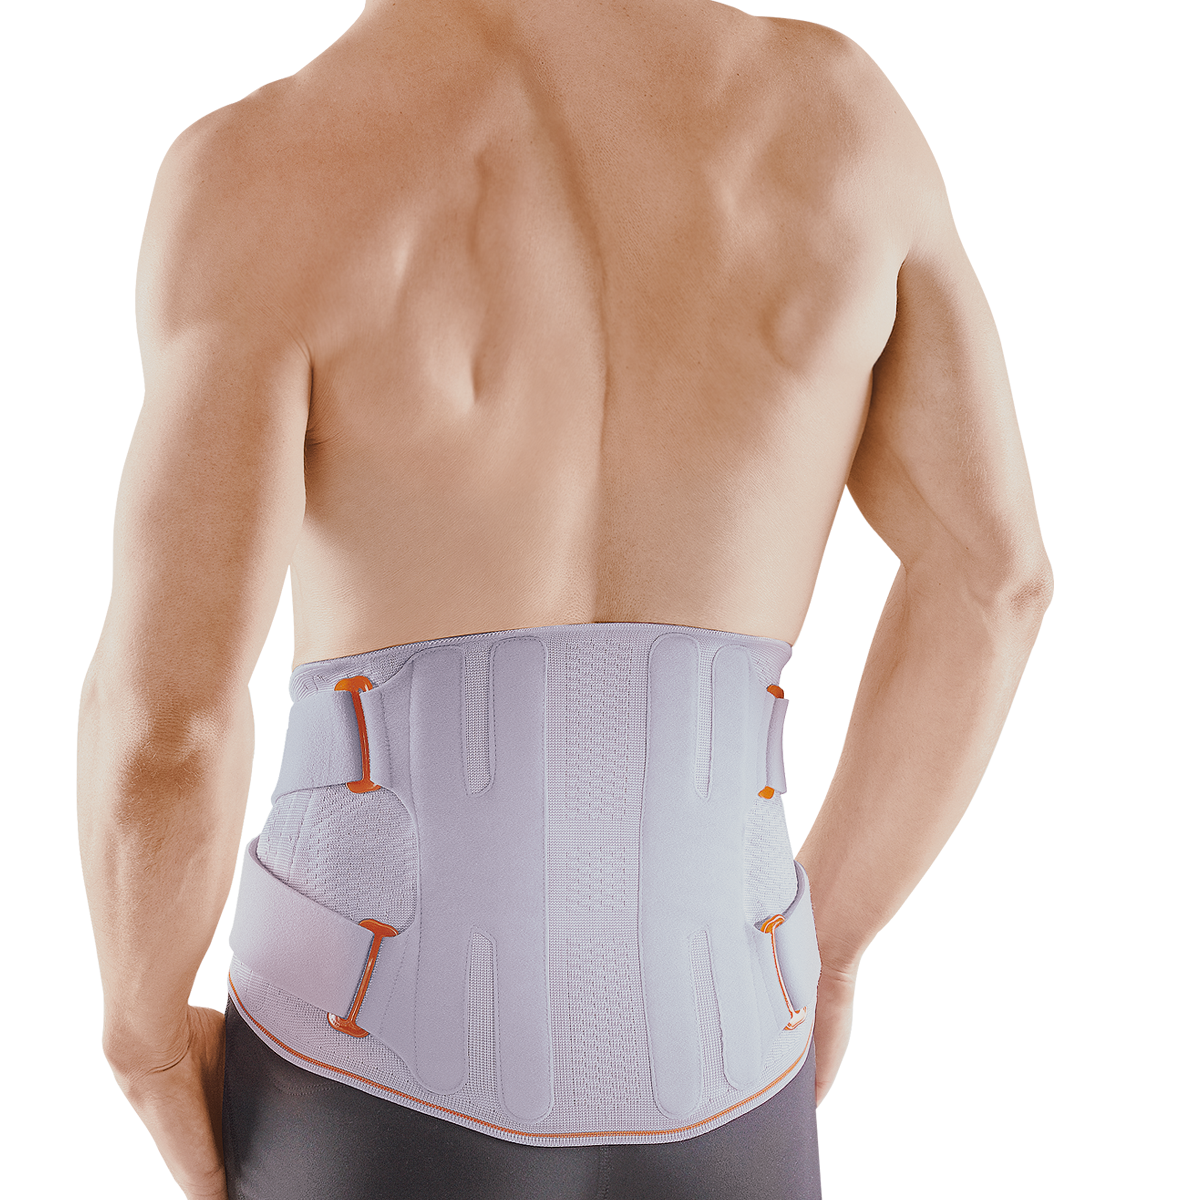 Dyna Back Pain Belt - Back Support Belt